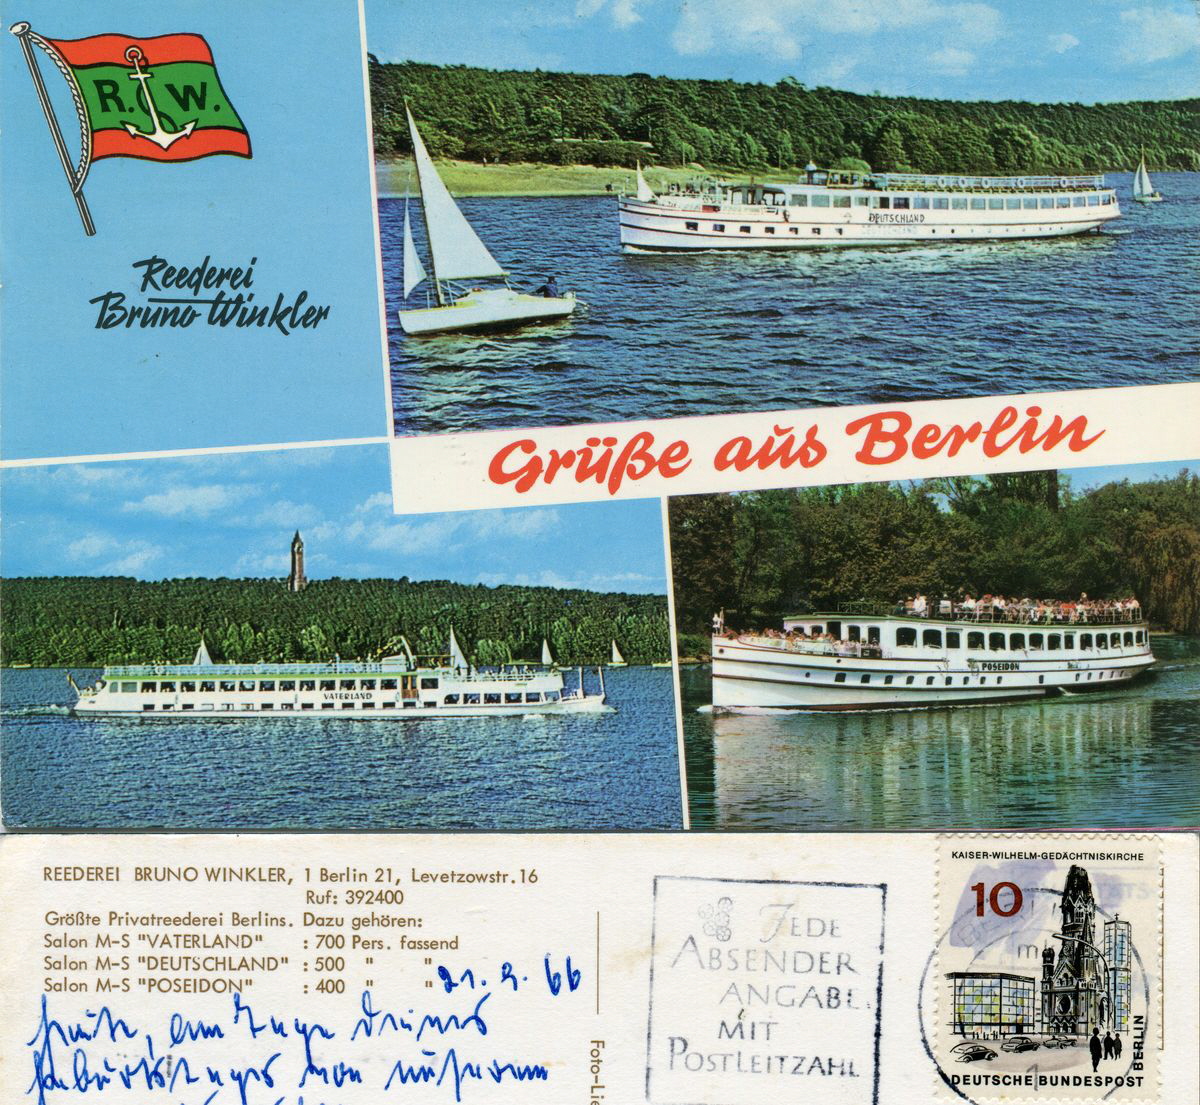 1966-09-21 Deutschland-Poseidon-Vaterland klein